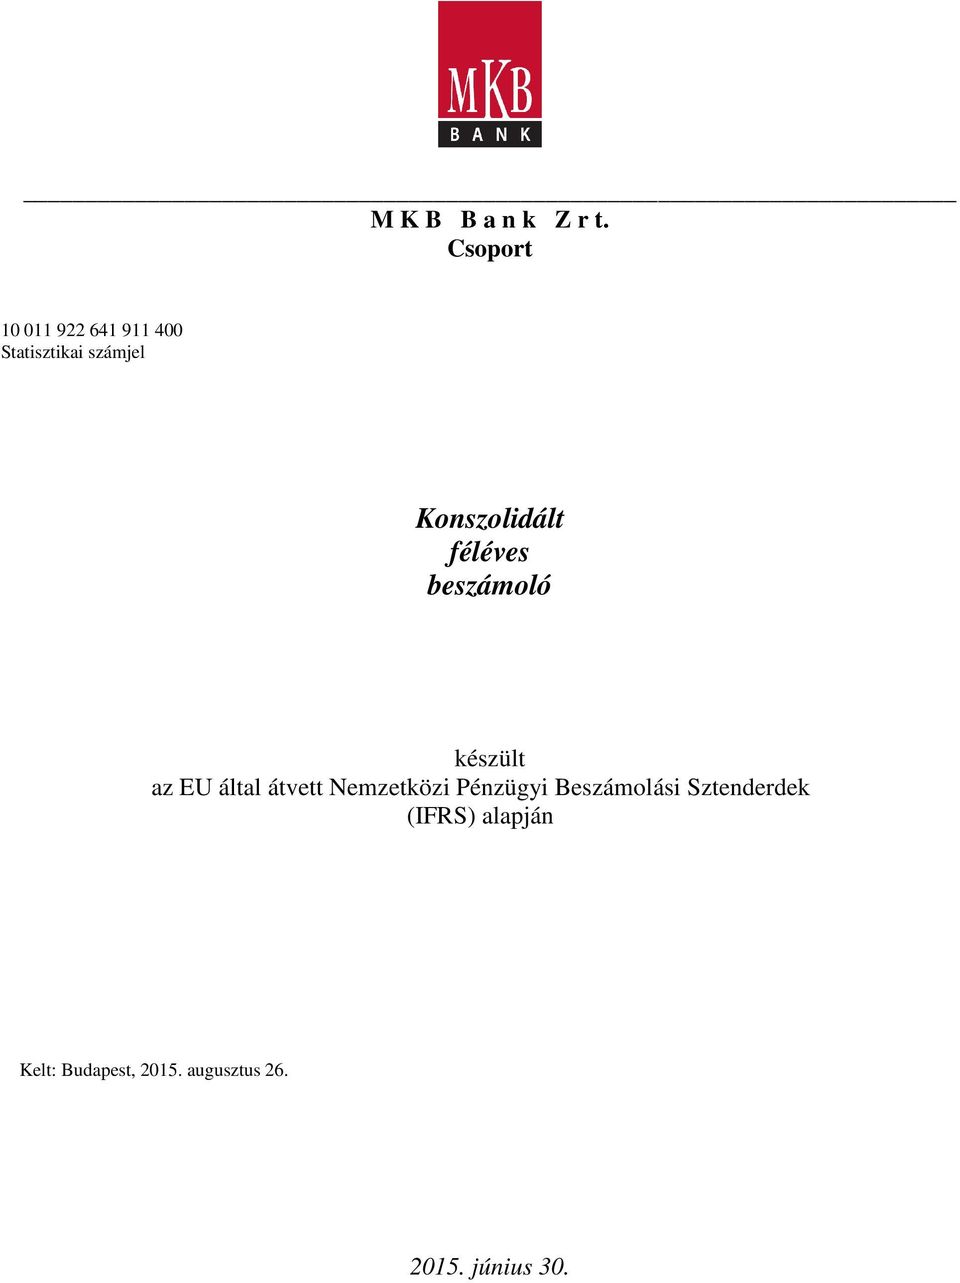 Konszolidált féléves beszámoló készült az EU által átvett